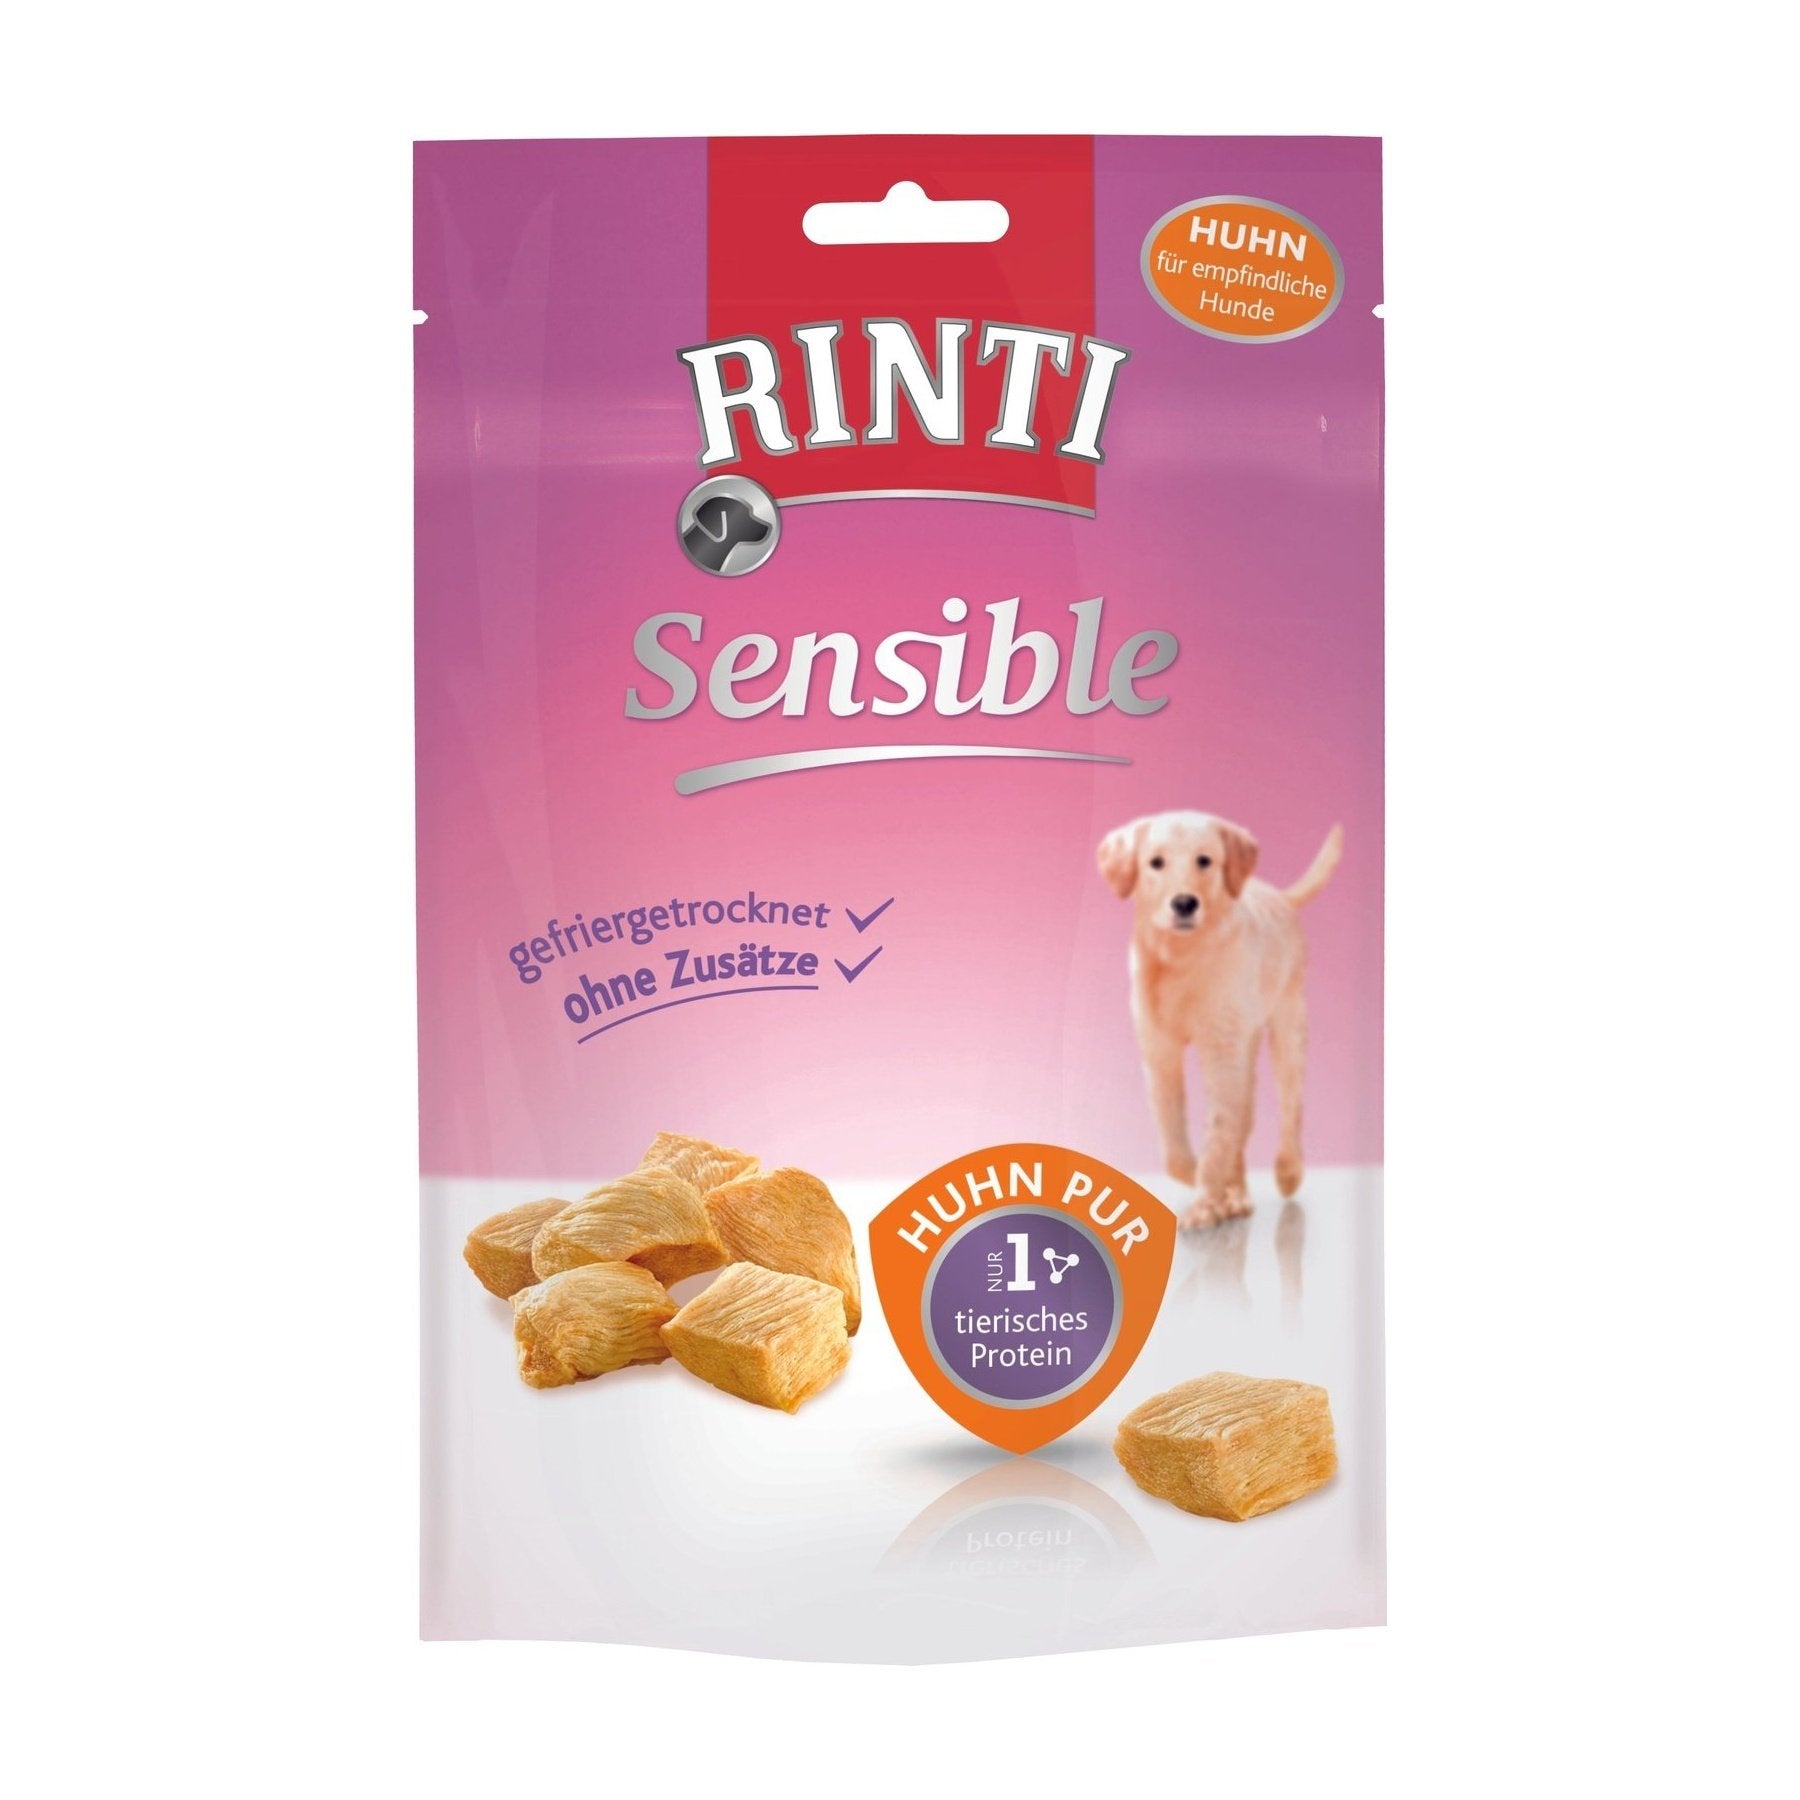 Artikel mit dem Namen Rinti Snack Huhn pur im Shop von zoo.de , dem Onlineshop für nachhaltiges Hundefutter und Katzenfutter.